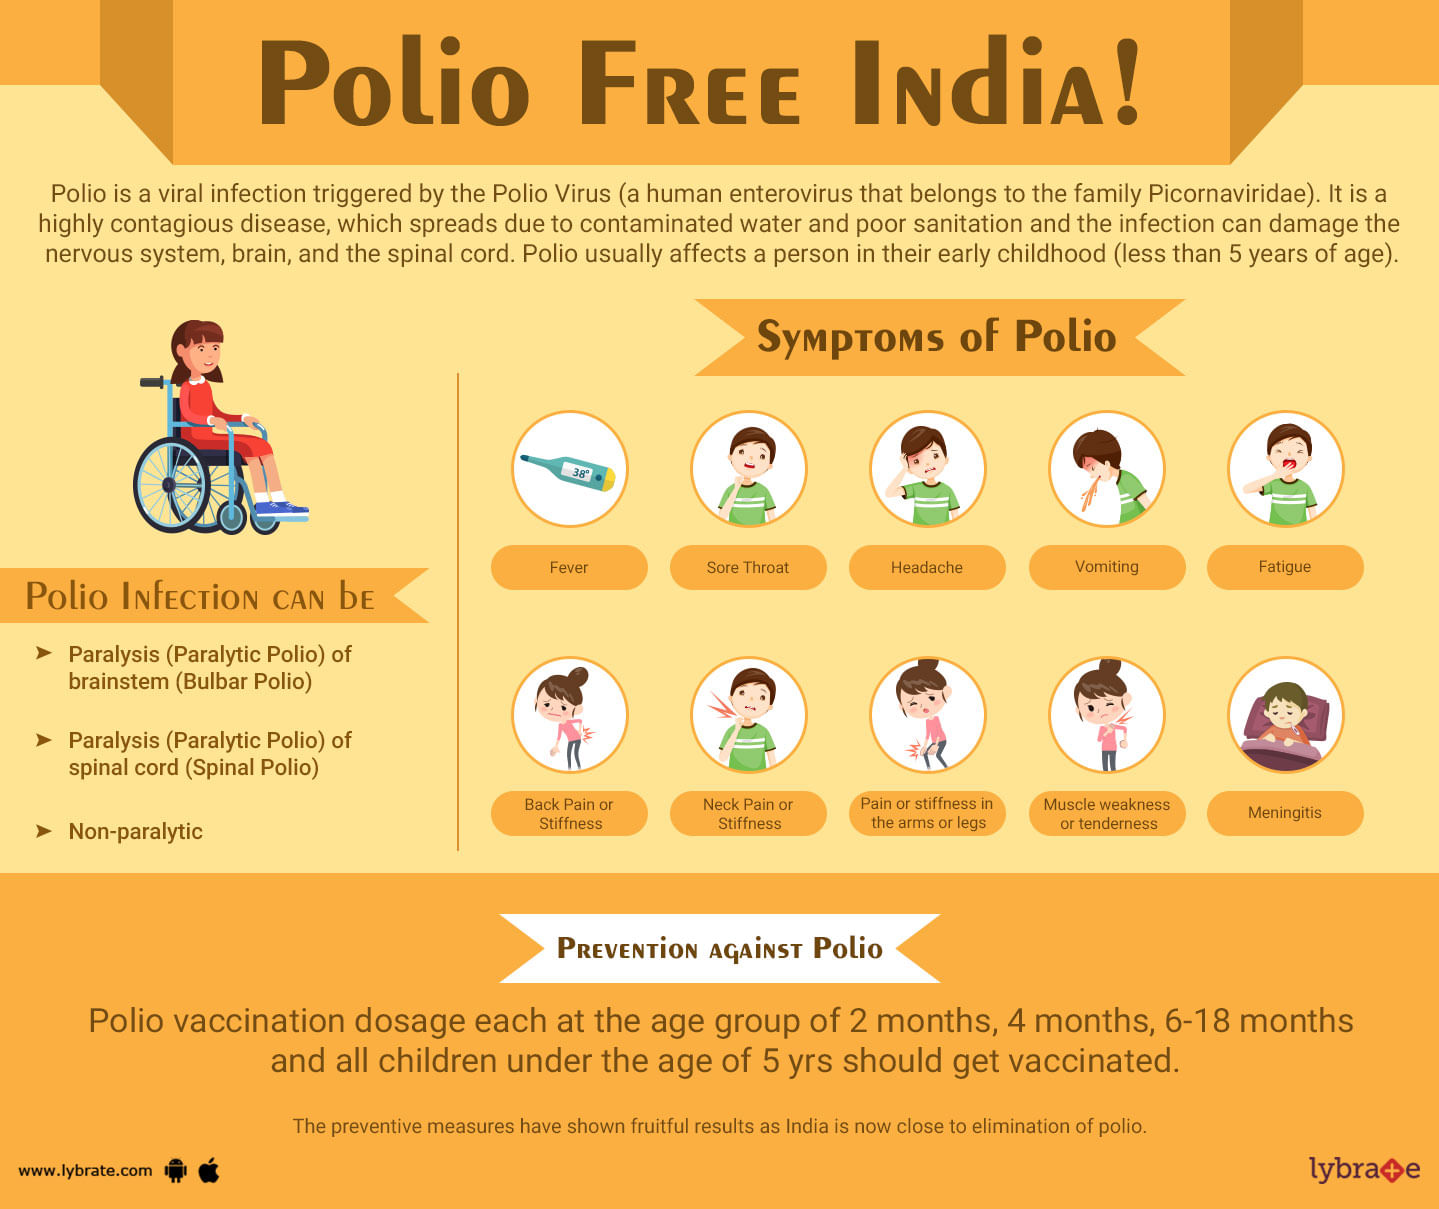 World Polio Day - Making India Polio Free!